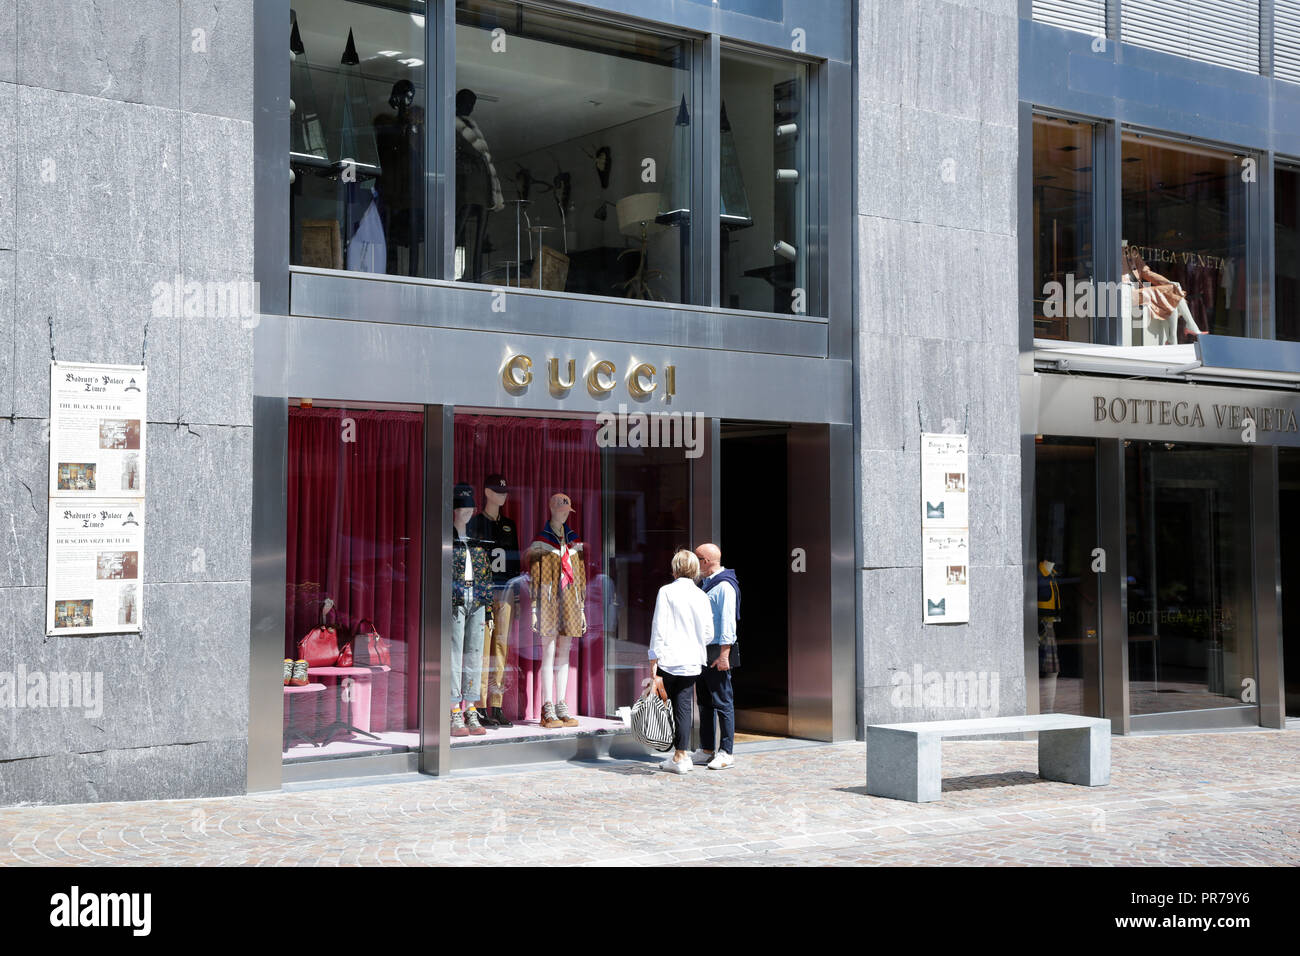 Sankt Moritz, Schweiz: shopping Windows mit Luxus Mode und Accessoires  Marken, an einem sonnigen Tag Stockfotografie - Alamy